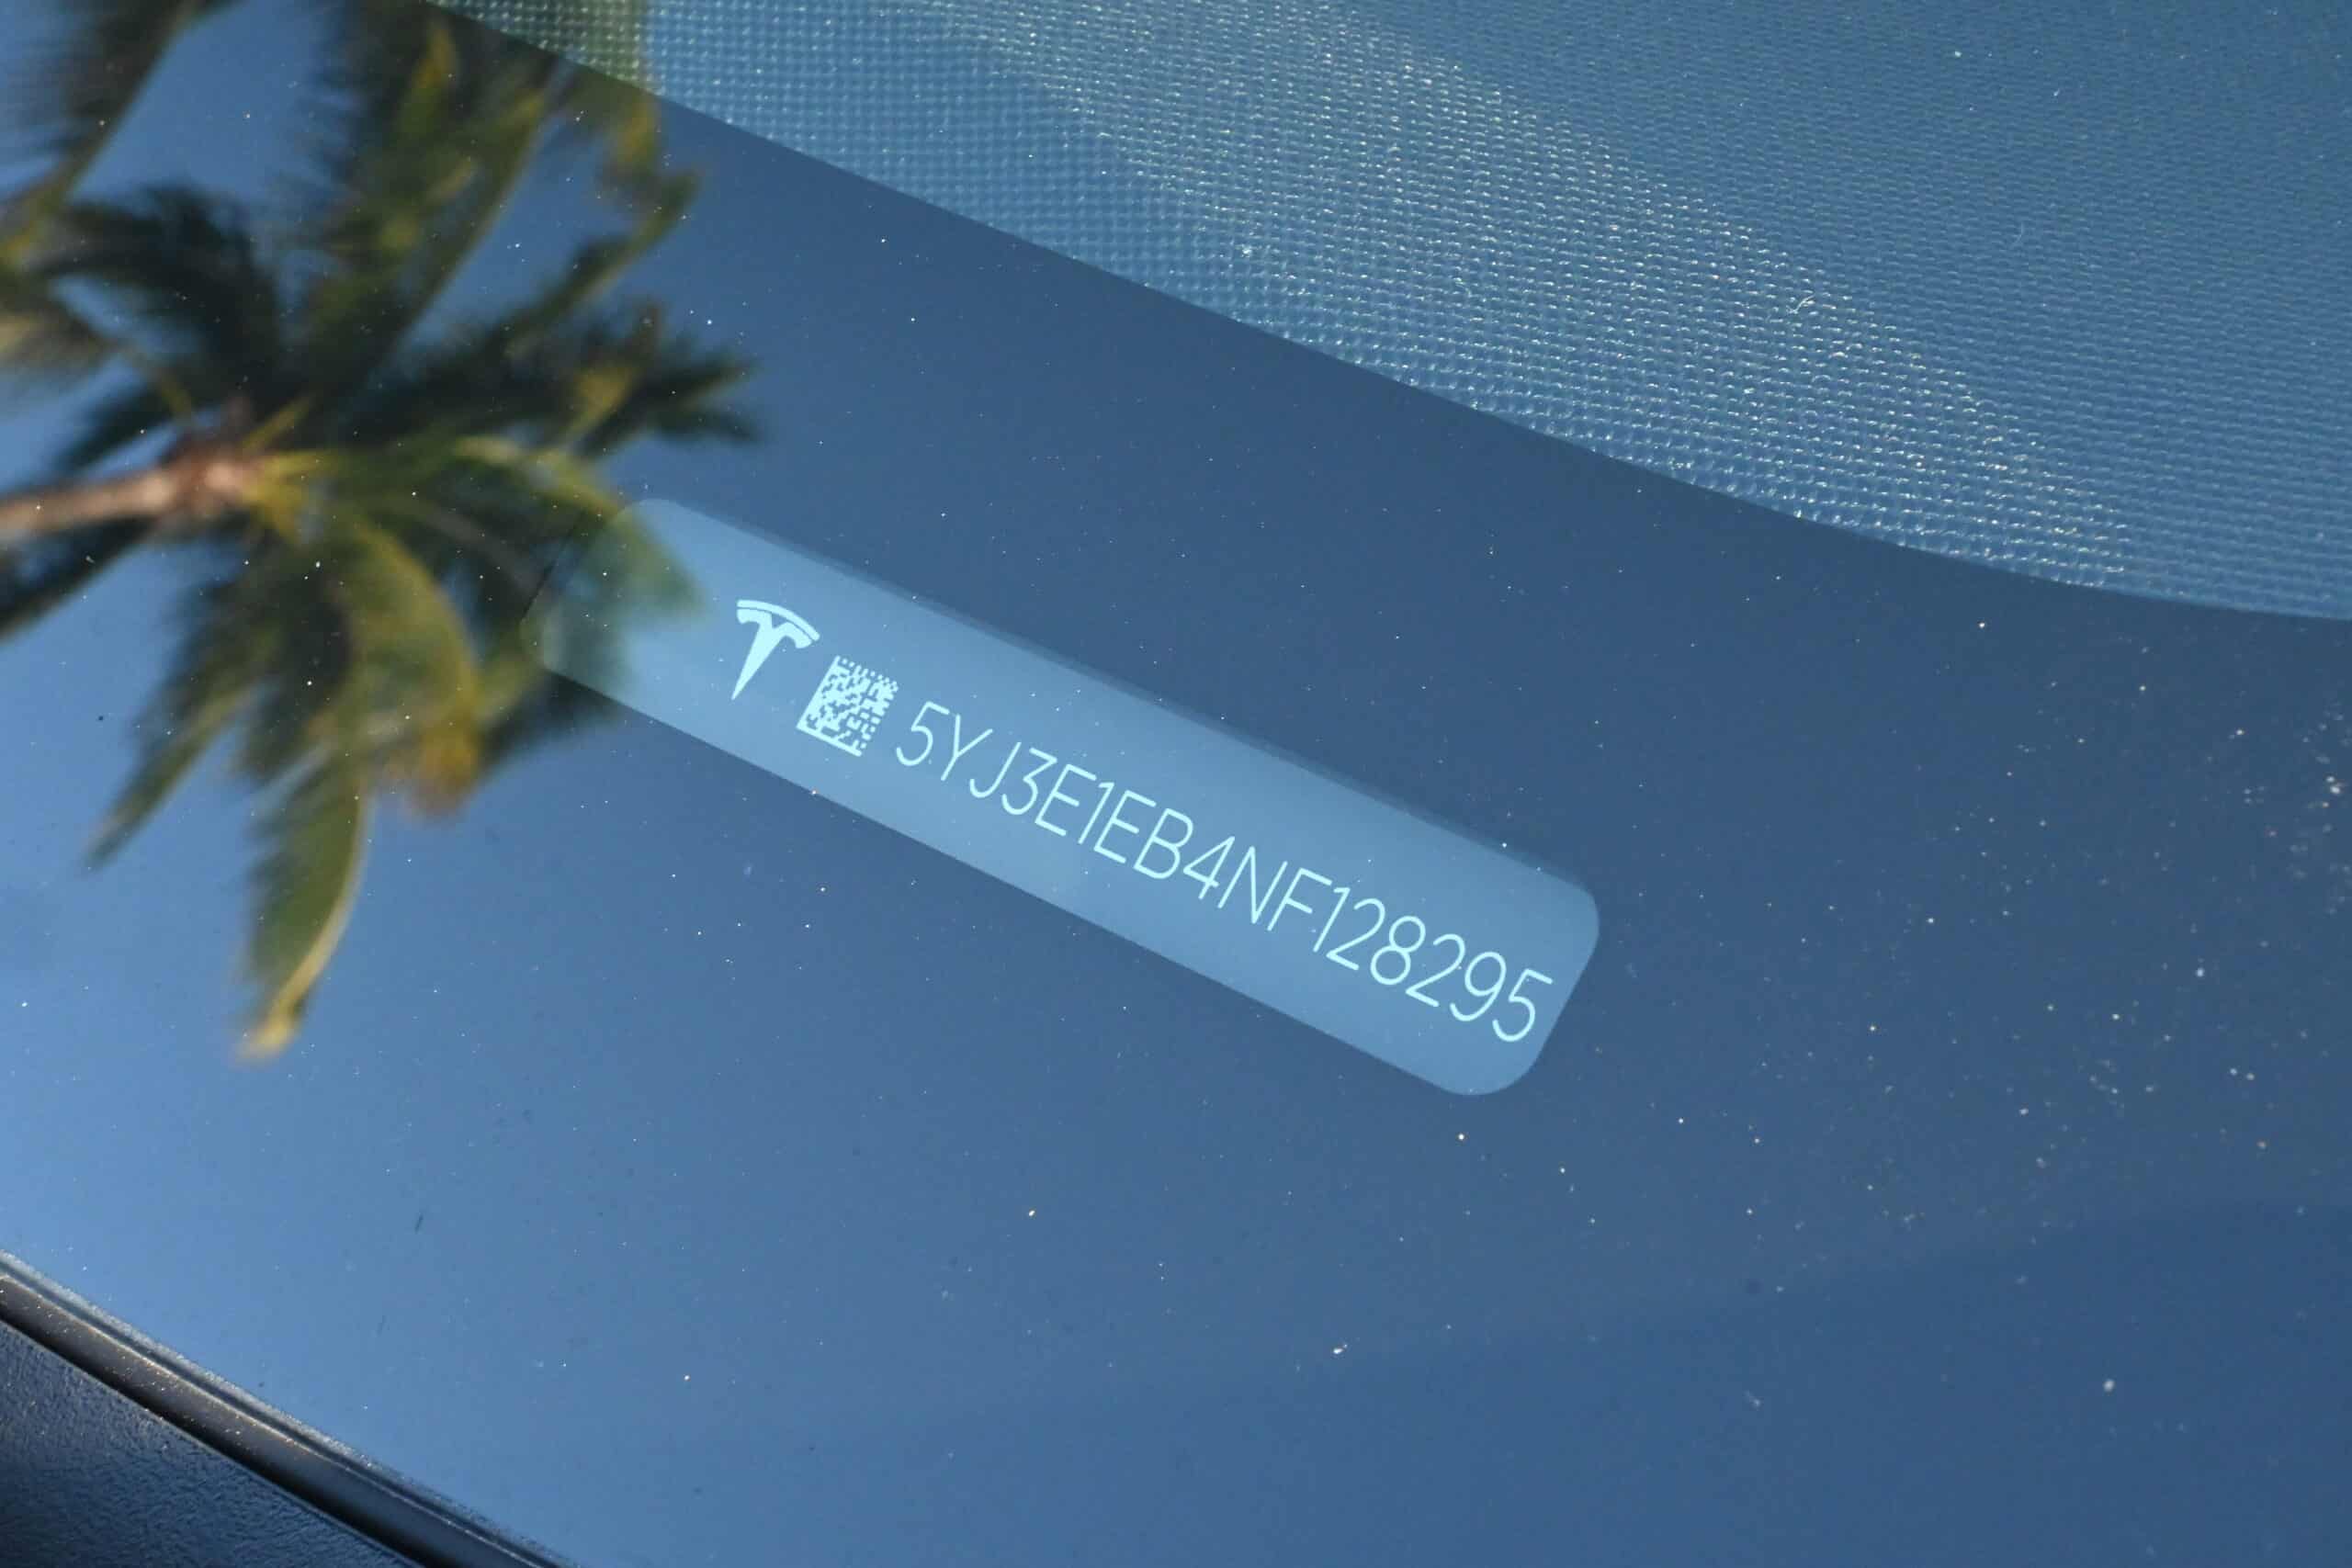 2022 Tesla Model 3 Model 3 Dual Motor Long Range AWD-1 Owner -Only 4k Miles – Still under factory warranty – LIKE NEW original window sticker included